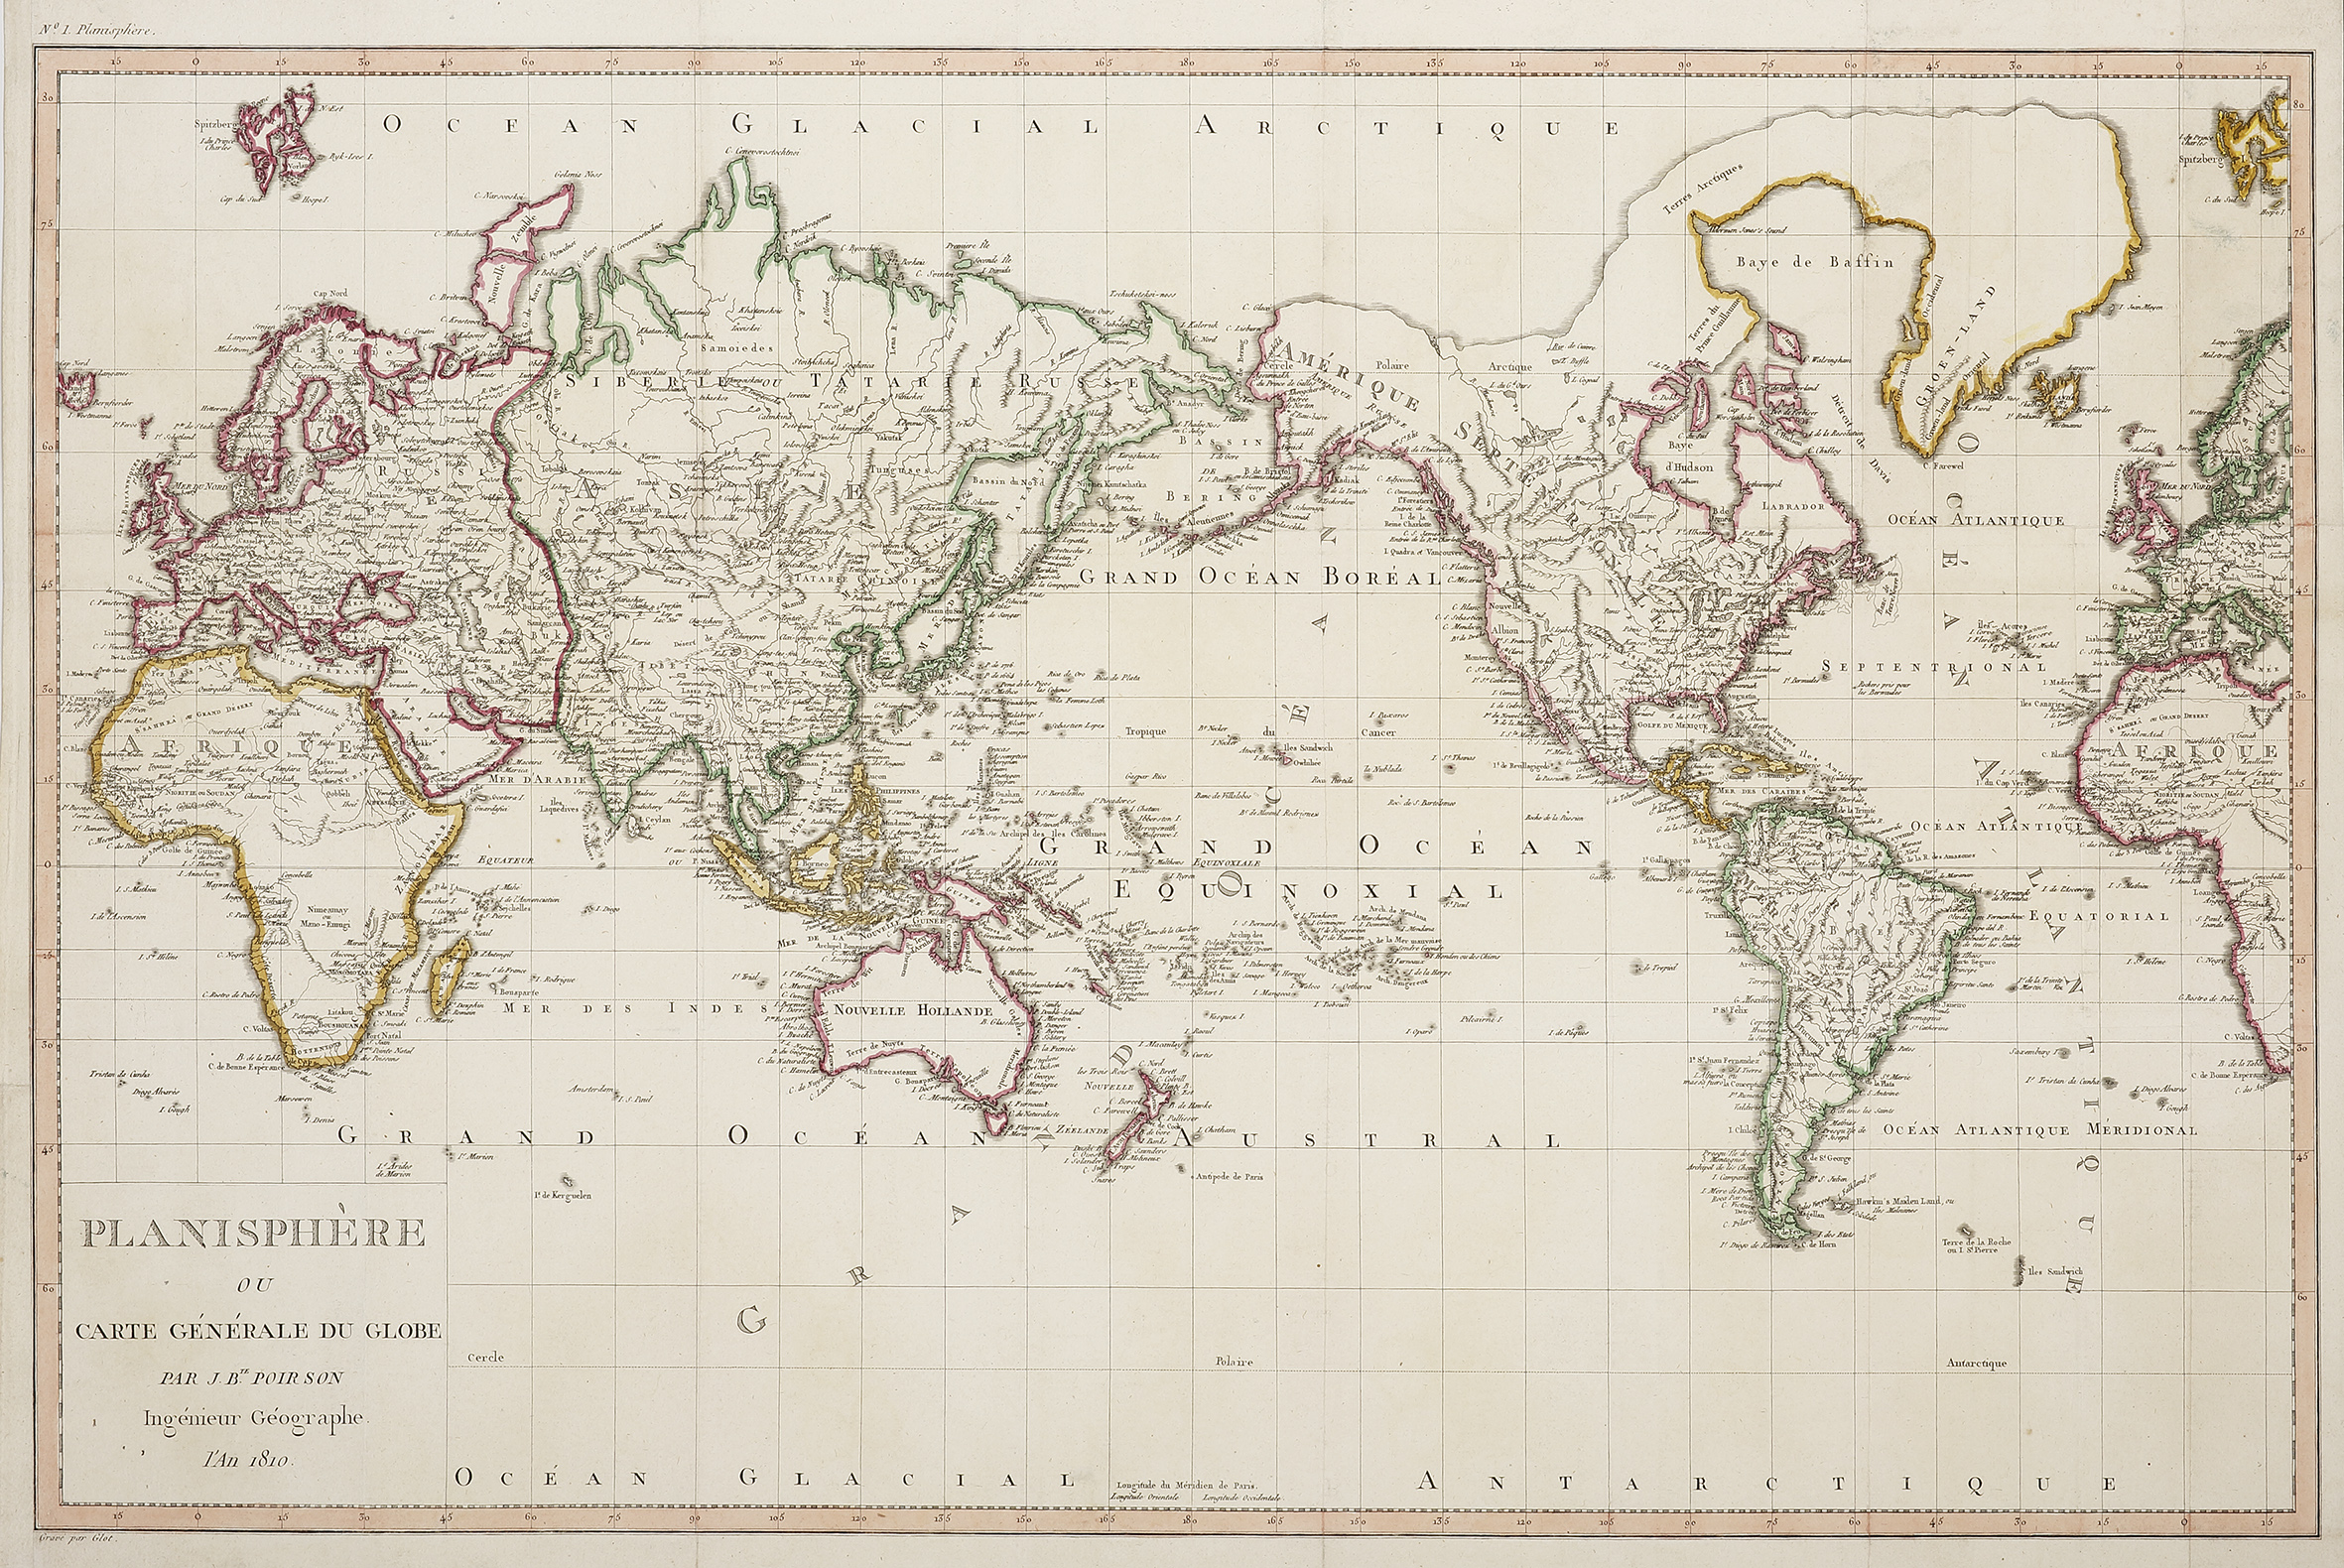 Planisphere ou Carte Generale du Globe  par J.B.Poirson Ingenieur Geographe l'An 1810. - Antique Map from 1810